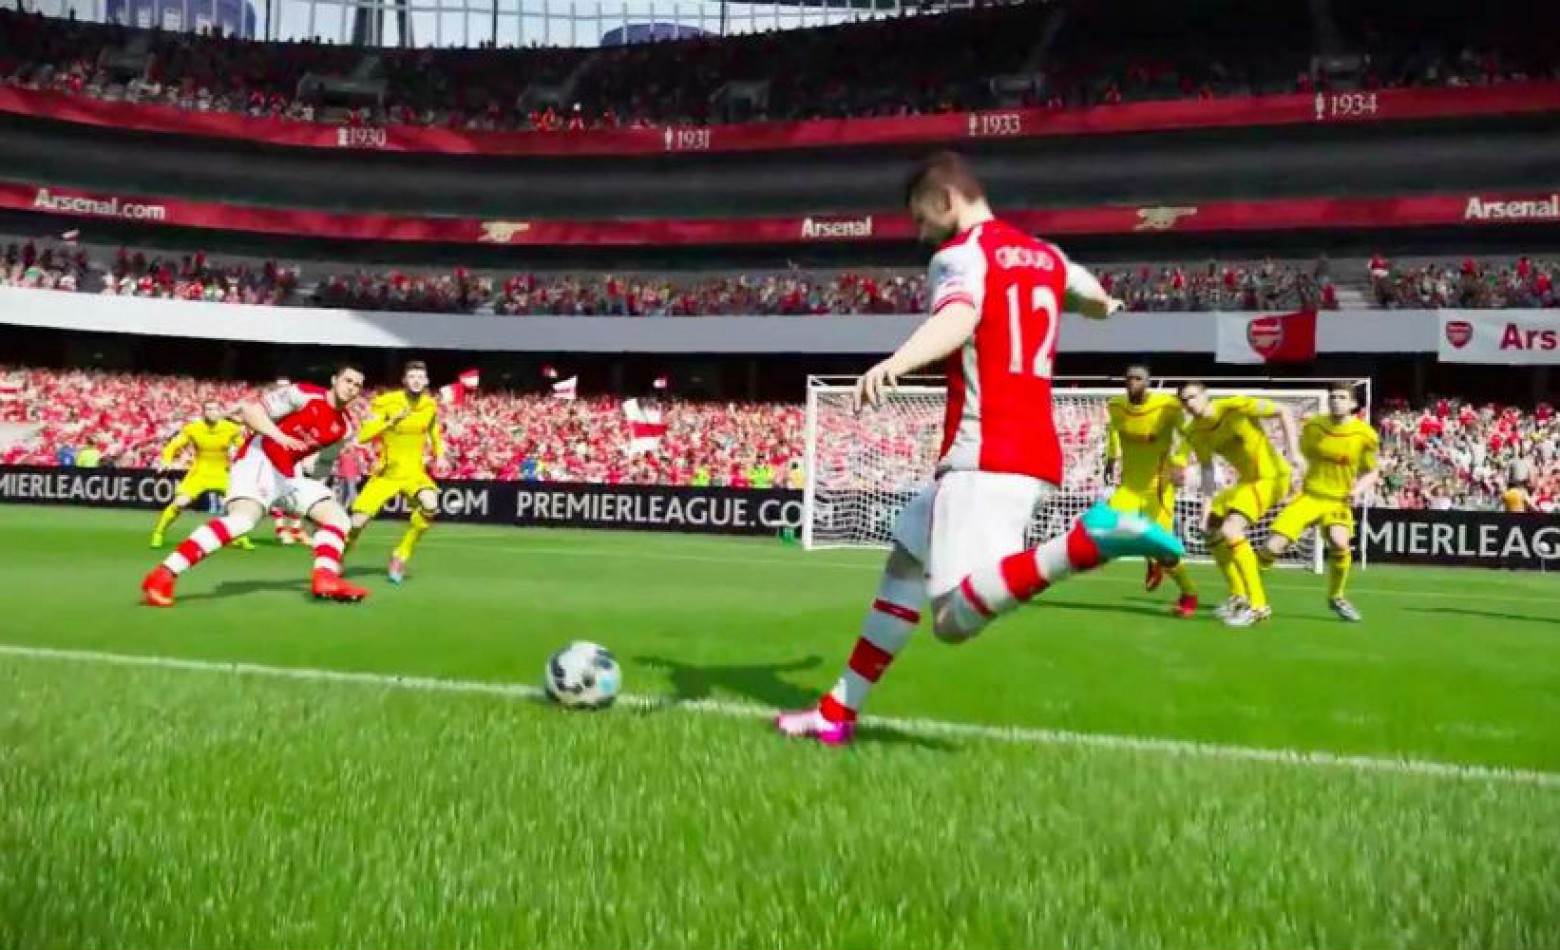 Demo de FIFA 15 chega nesta terça, confira especificações